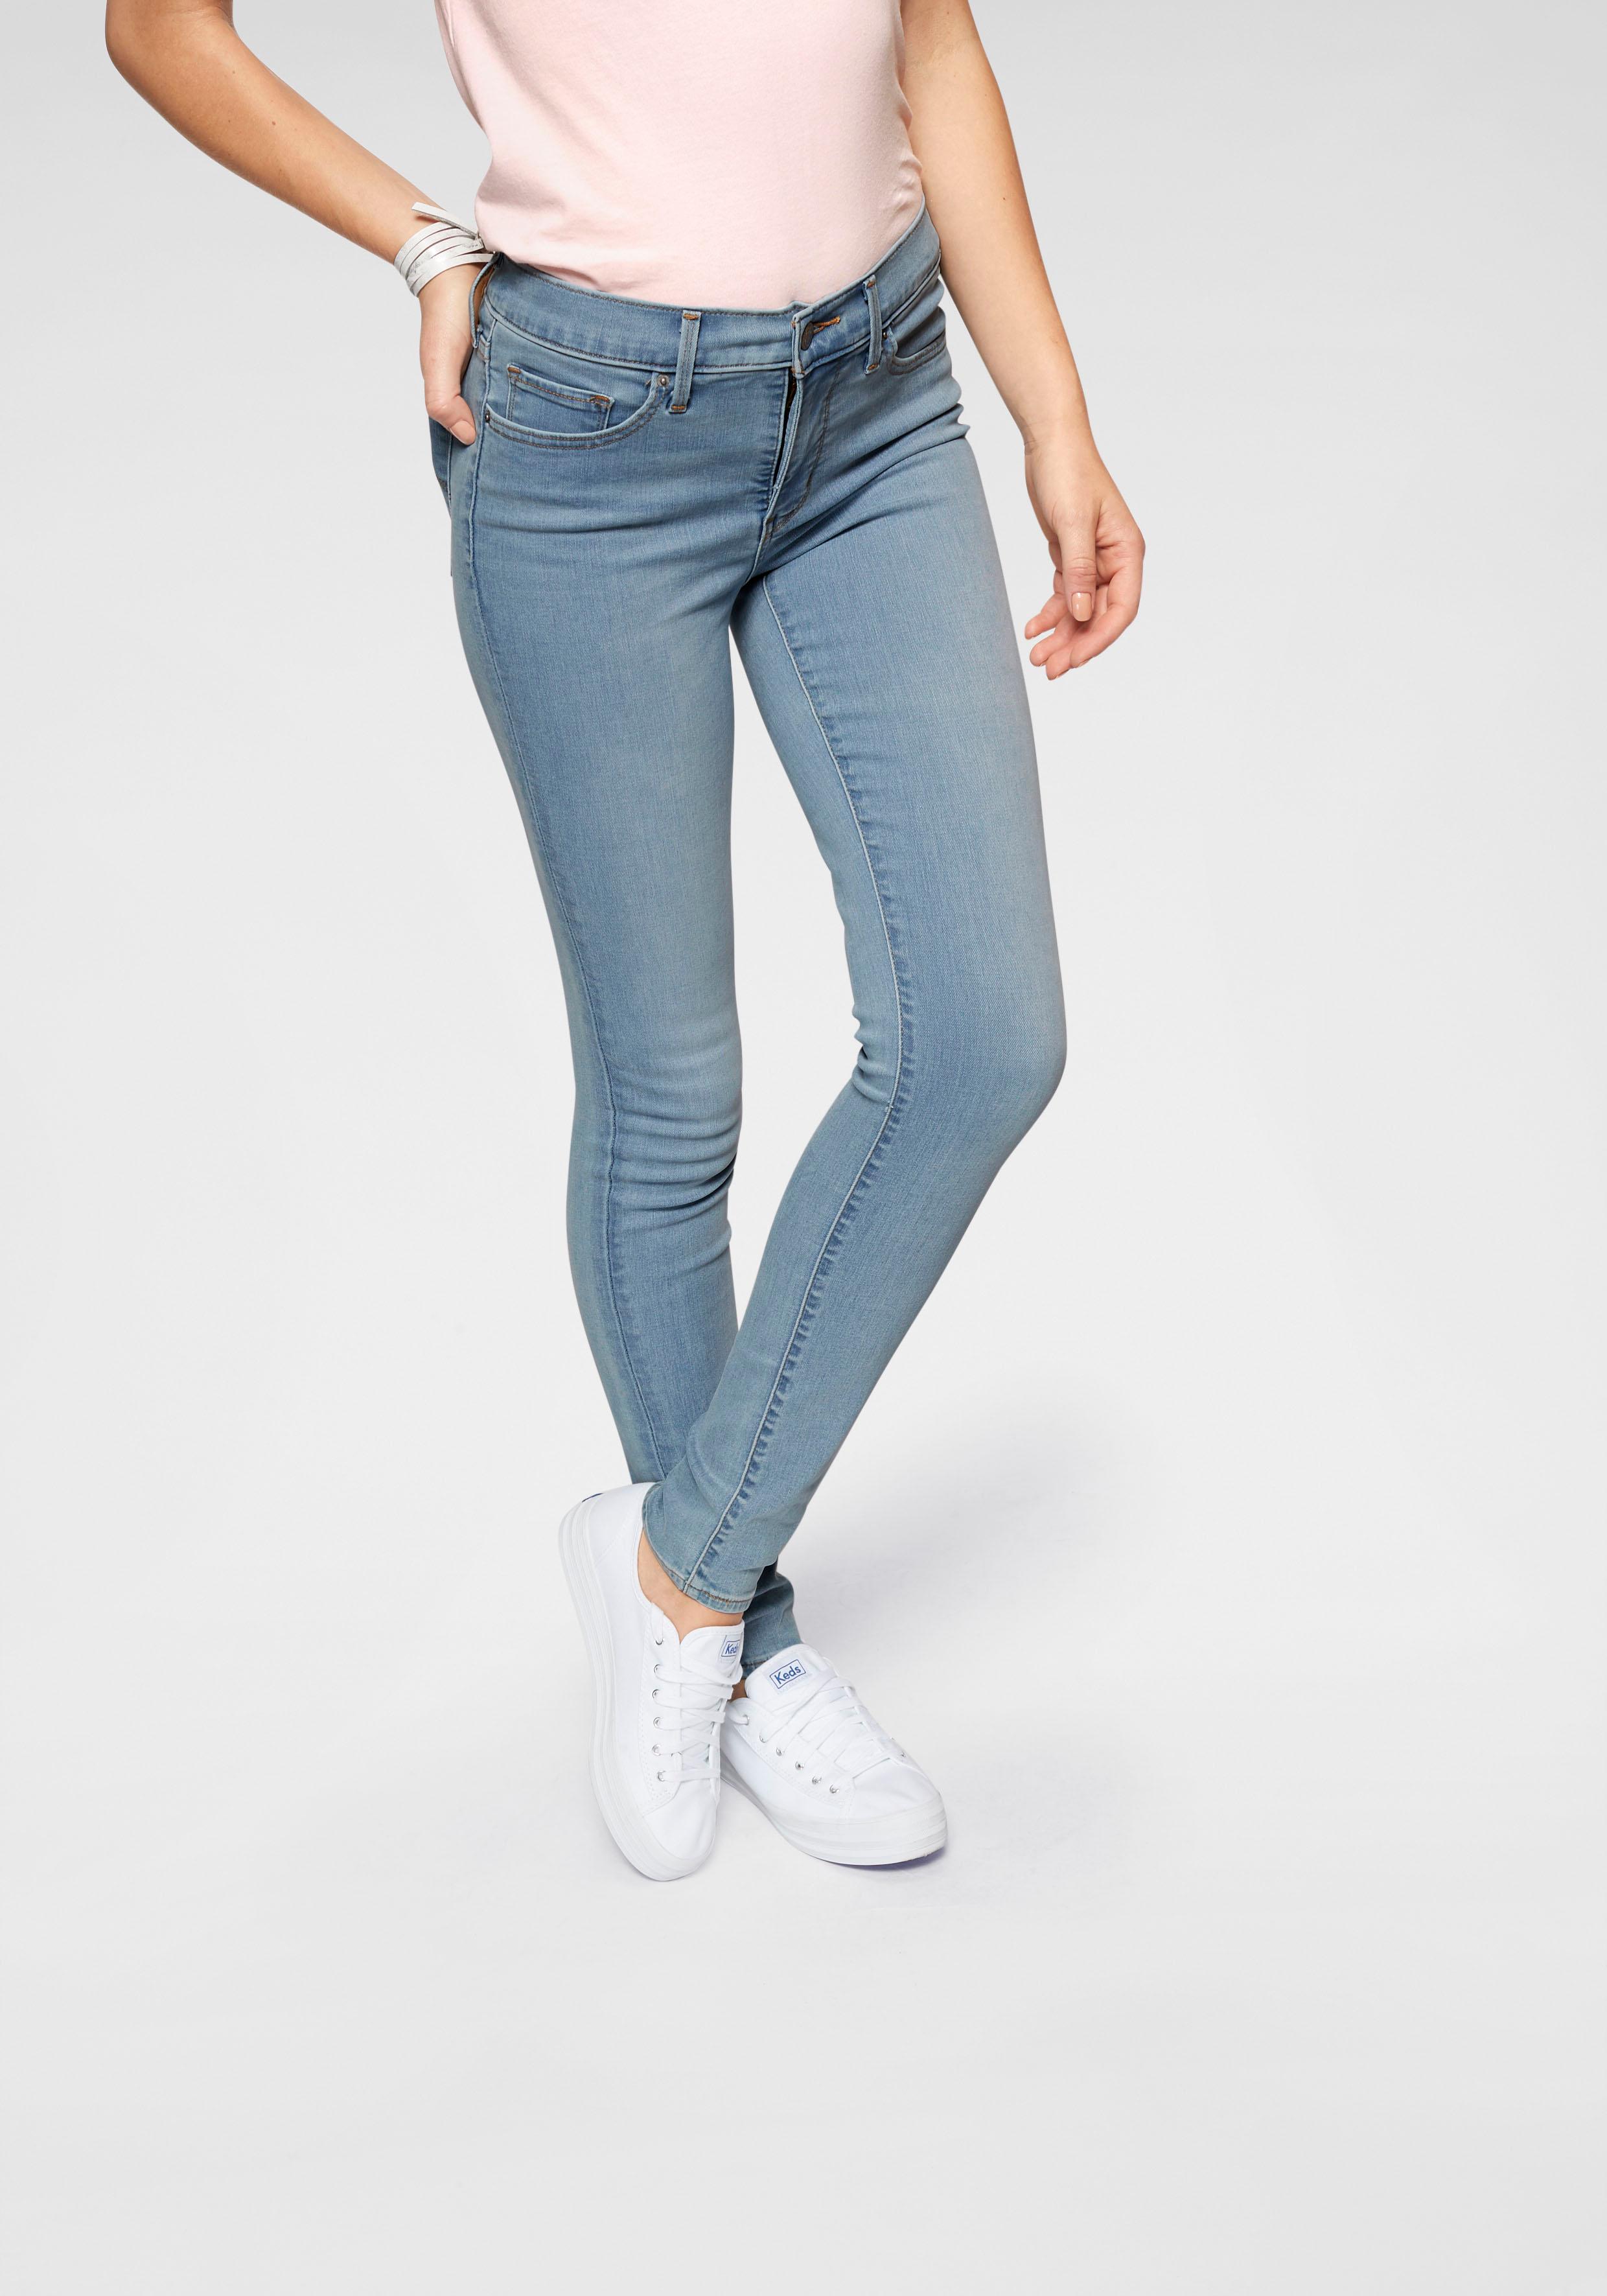 Levi's Damen 311 Shaping Skinny Jeans, Blau (Open Ocean 0103), W27/L32